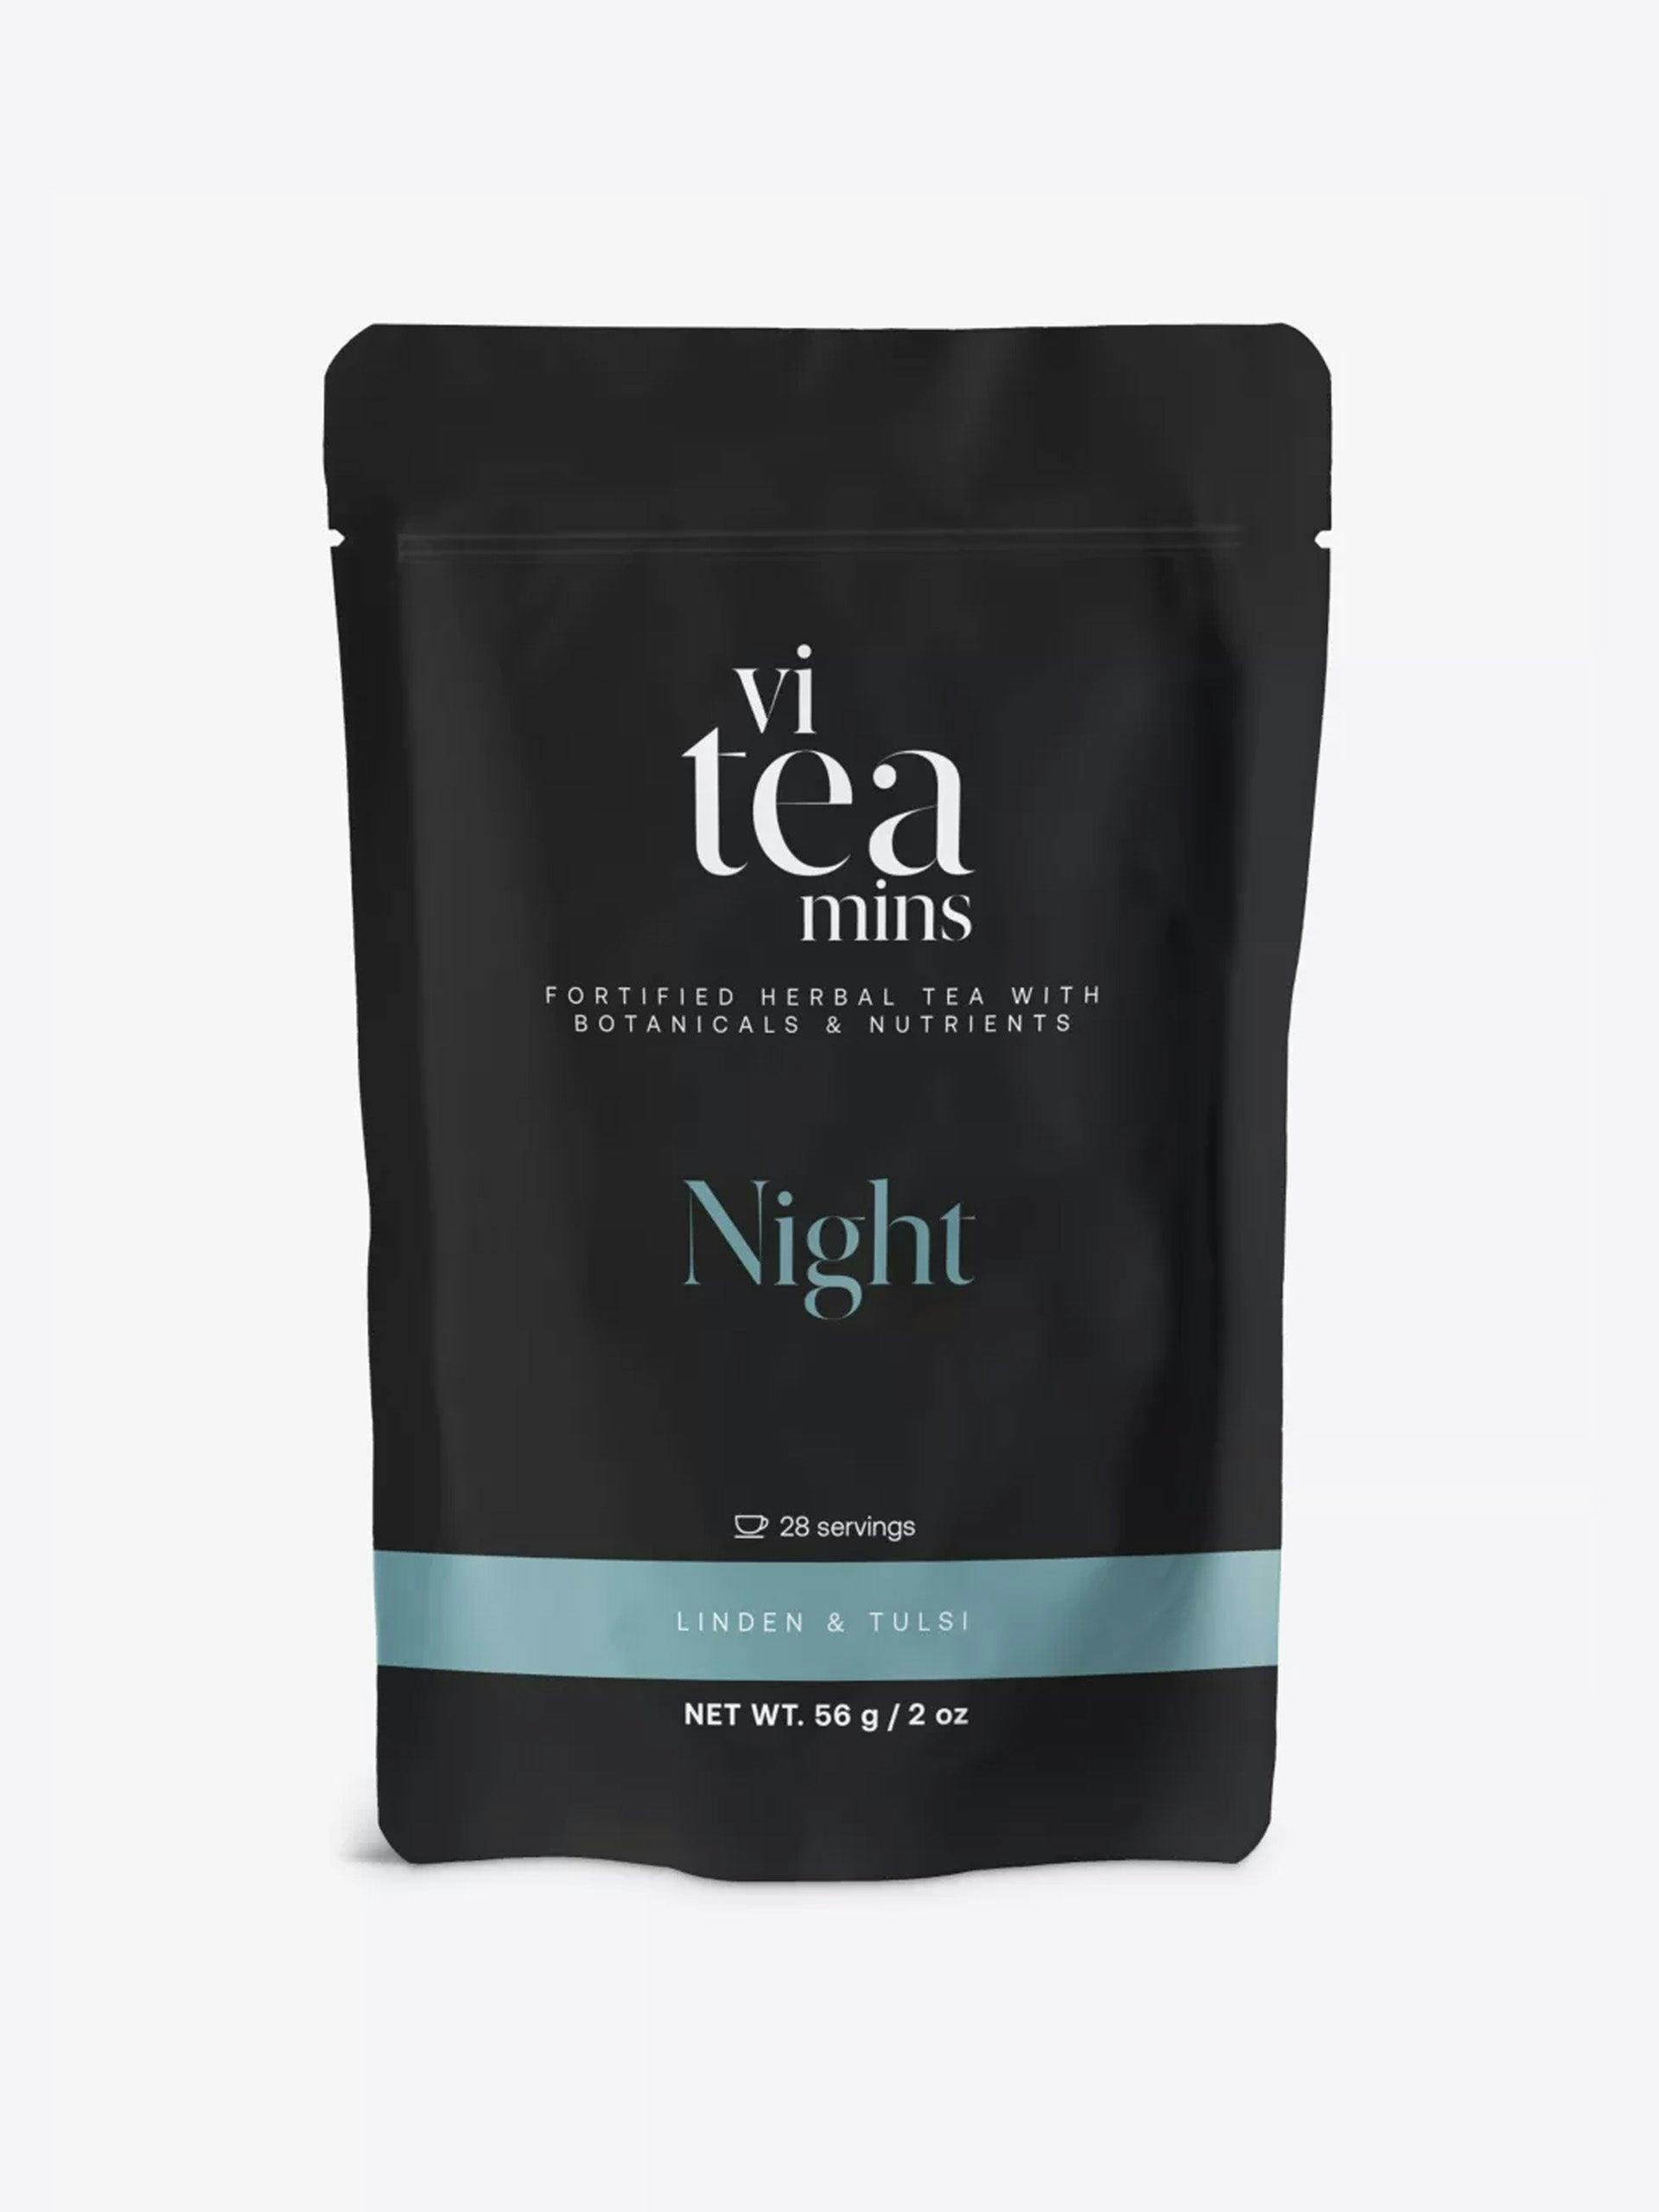 ViTeamins Night tea